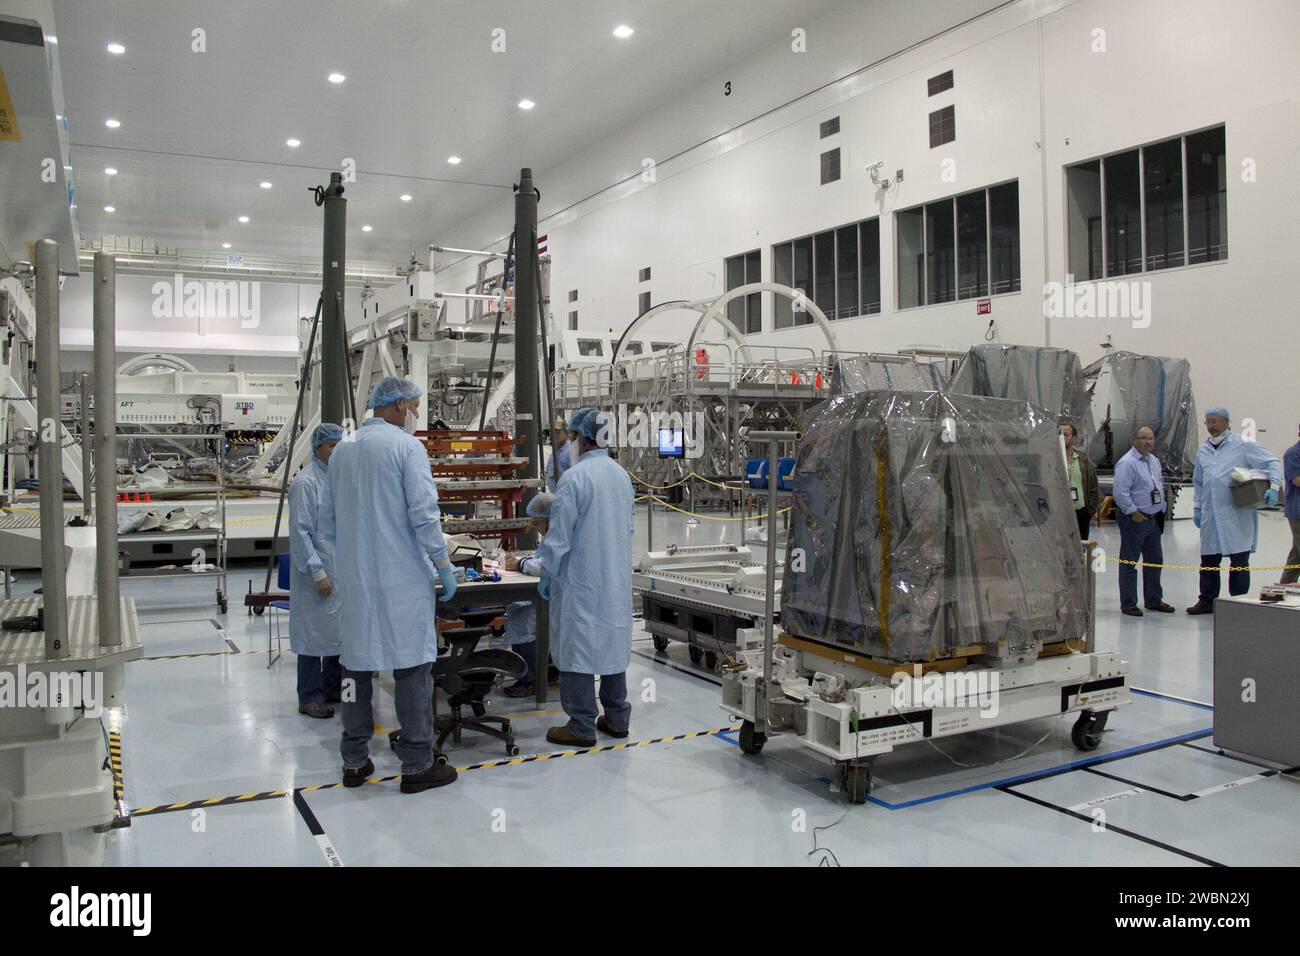 CAPE CANAVERAL, Fla. -- Techniker bringen ein System, das das Potenzial untersucht, vorhandene Raumfahrzeuge im Orbit mit Robotern zu betanken, von einem Verarbeitungslabor in eine Hochbucht in der Raumstation-Verarbeitungsanlage im Kennedy Space Center der NASA in Florida. Die Bewegung bereitet das System auf seinen Auftrieb in den Lightweight Multi-Purpose Experiment Support Structure Carrier (LMC) vor, der es in die Umlaufbahn bringt. Das System, das als Robotic Tanking Mission (RRM) bezeichnet wird, wird so verarbeitet, dass es an Bord des Space Shuttle Atlantis auf der STS-135-Mission zur Internationalen Raumstation fliegen kann. Auch nach oben gehen Stockfoto